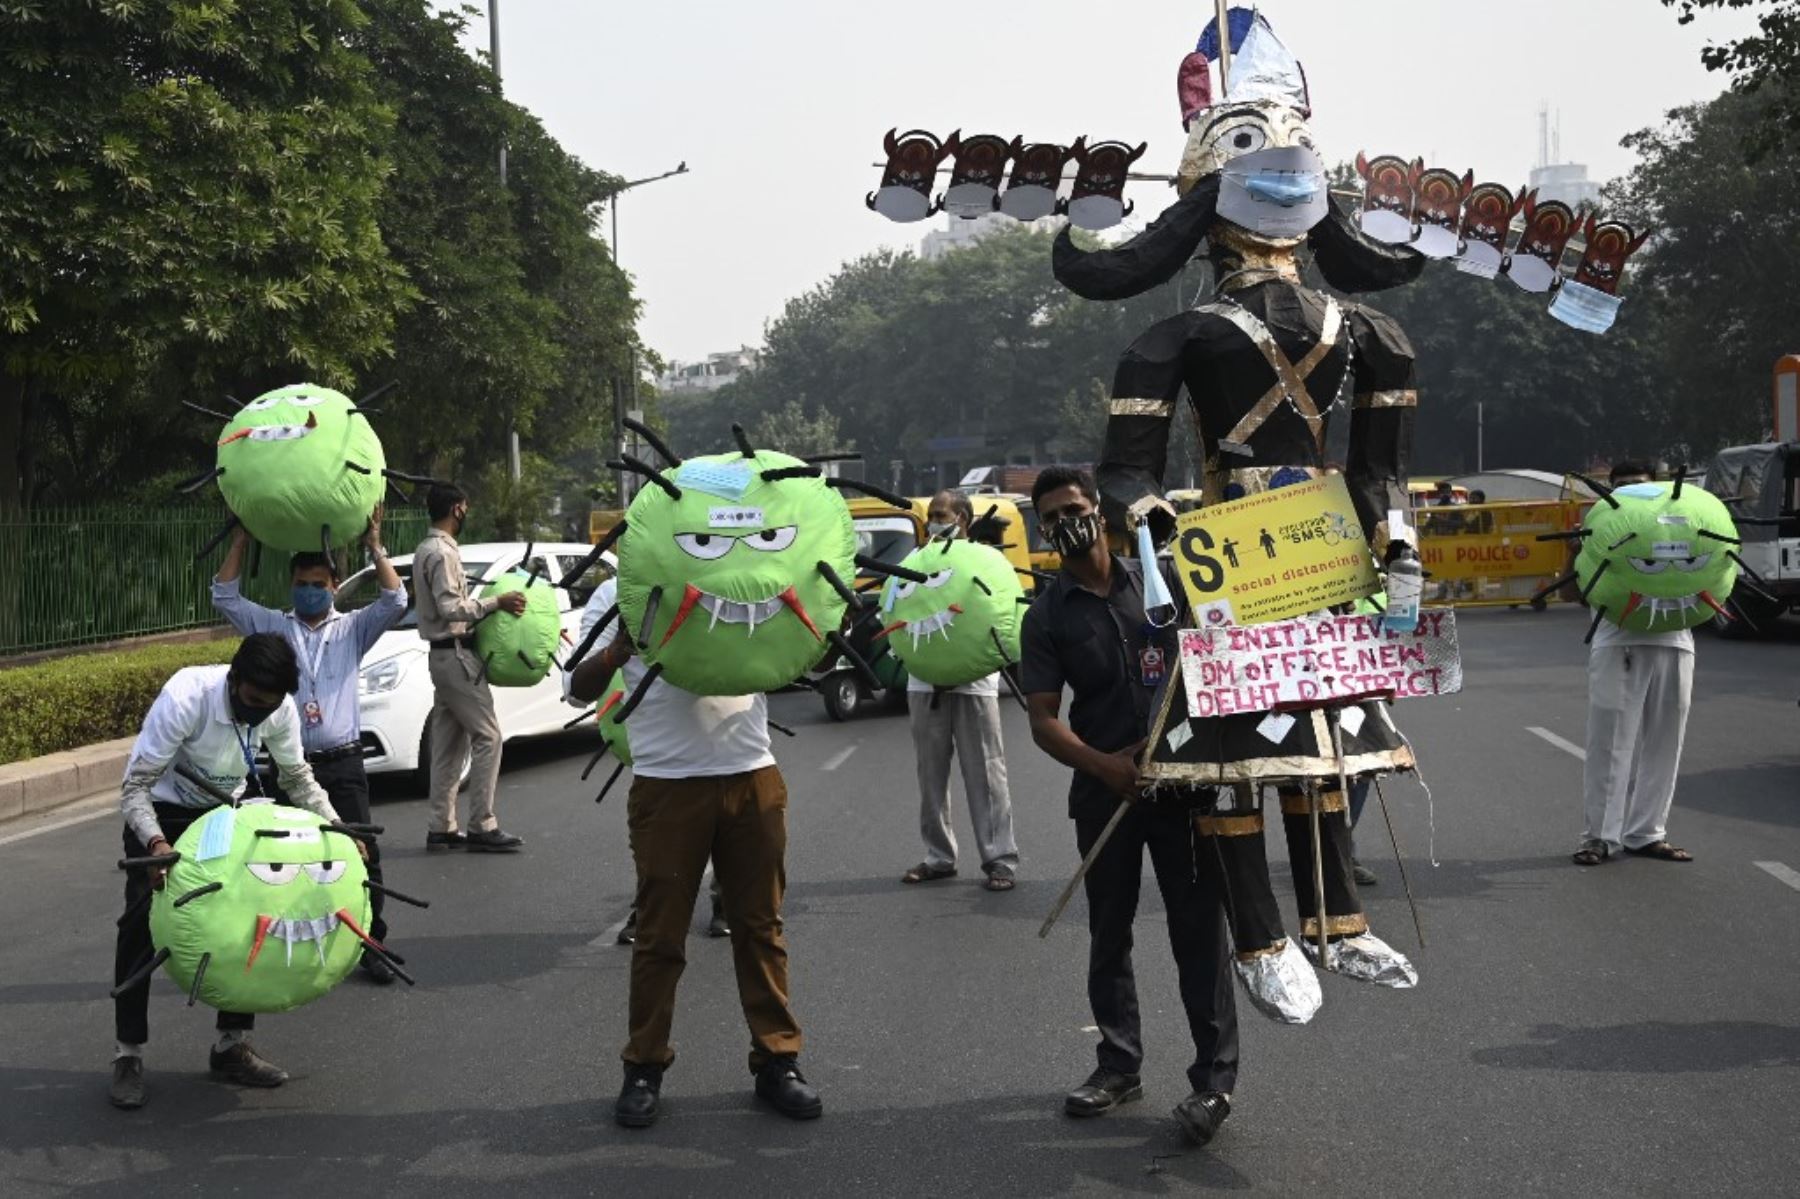 Oficiales de la oficina del magistrado de distrito sostienen mascotas con temática del coronavirus  y una efigie del demonio hindú Rey Ravana,  en una carretera durante una campaña de concientización contra el covid-19. Foto:AFP